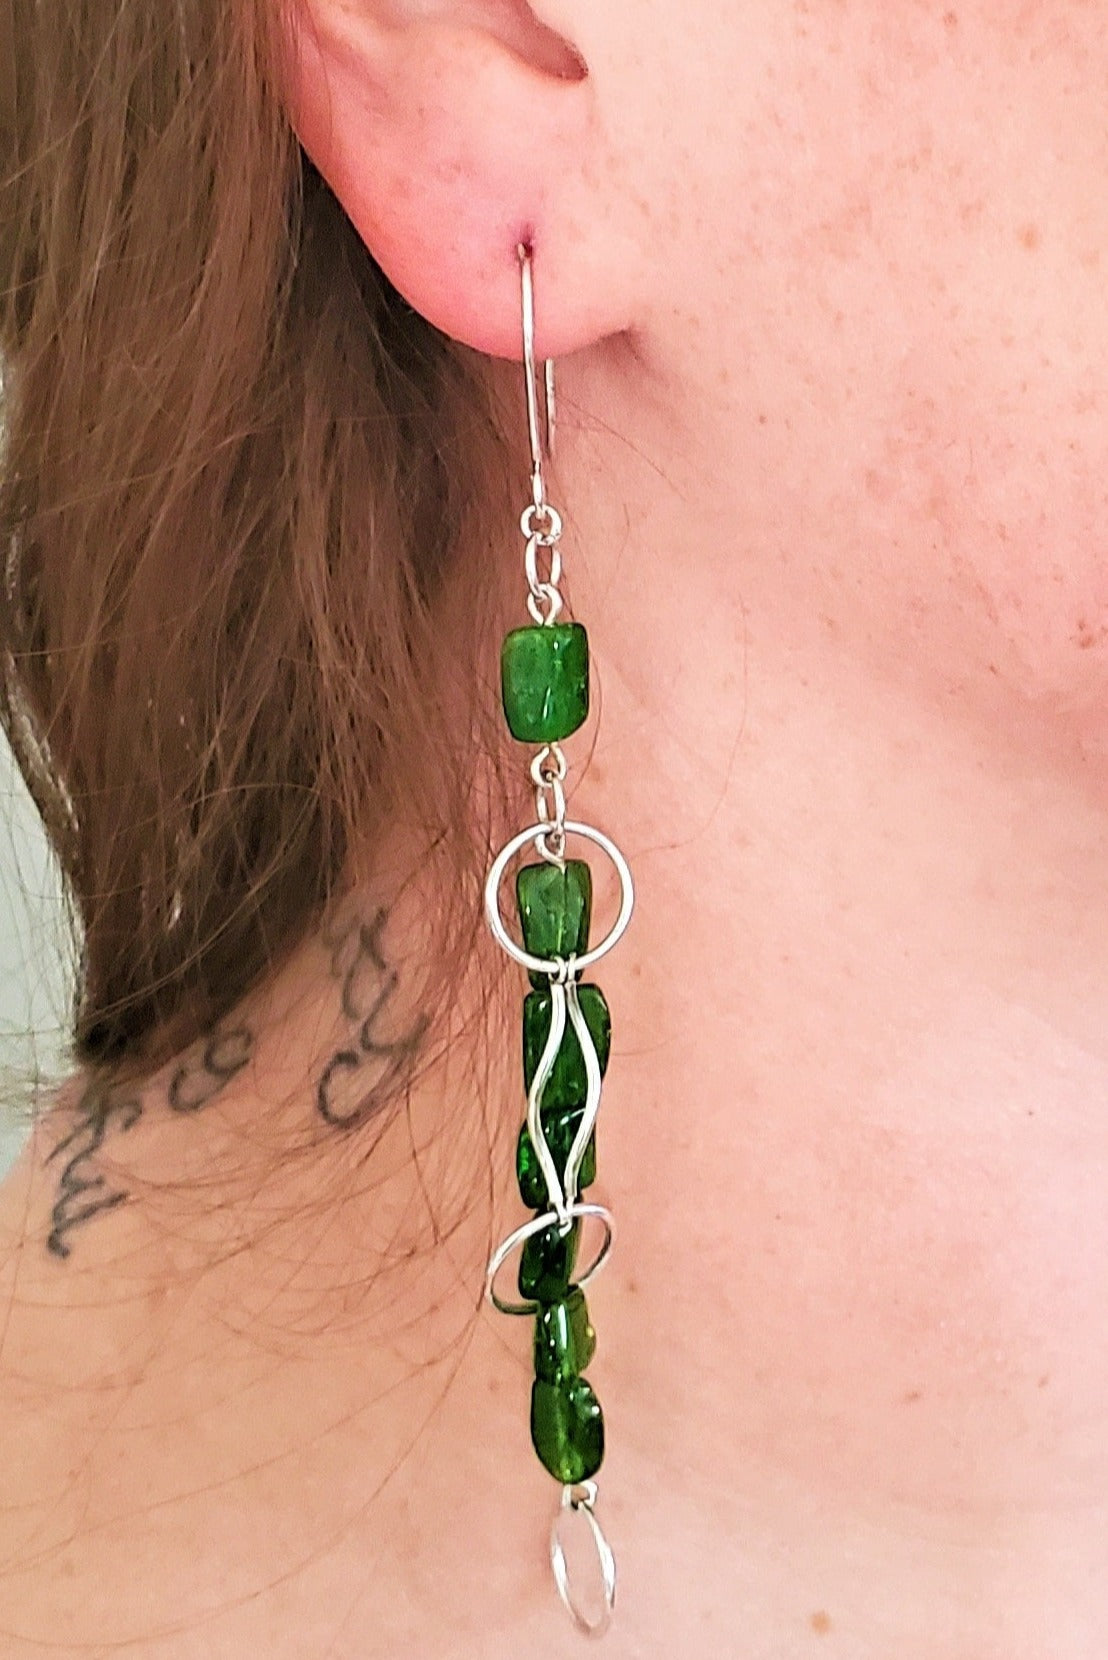 Red Head wearing green earrings, handmade earrings, earrings for women, Vale Dangle Earrings